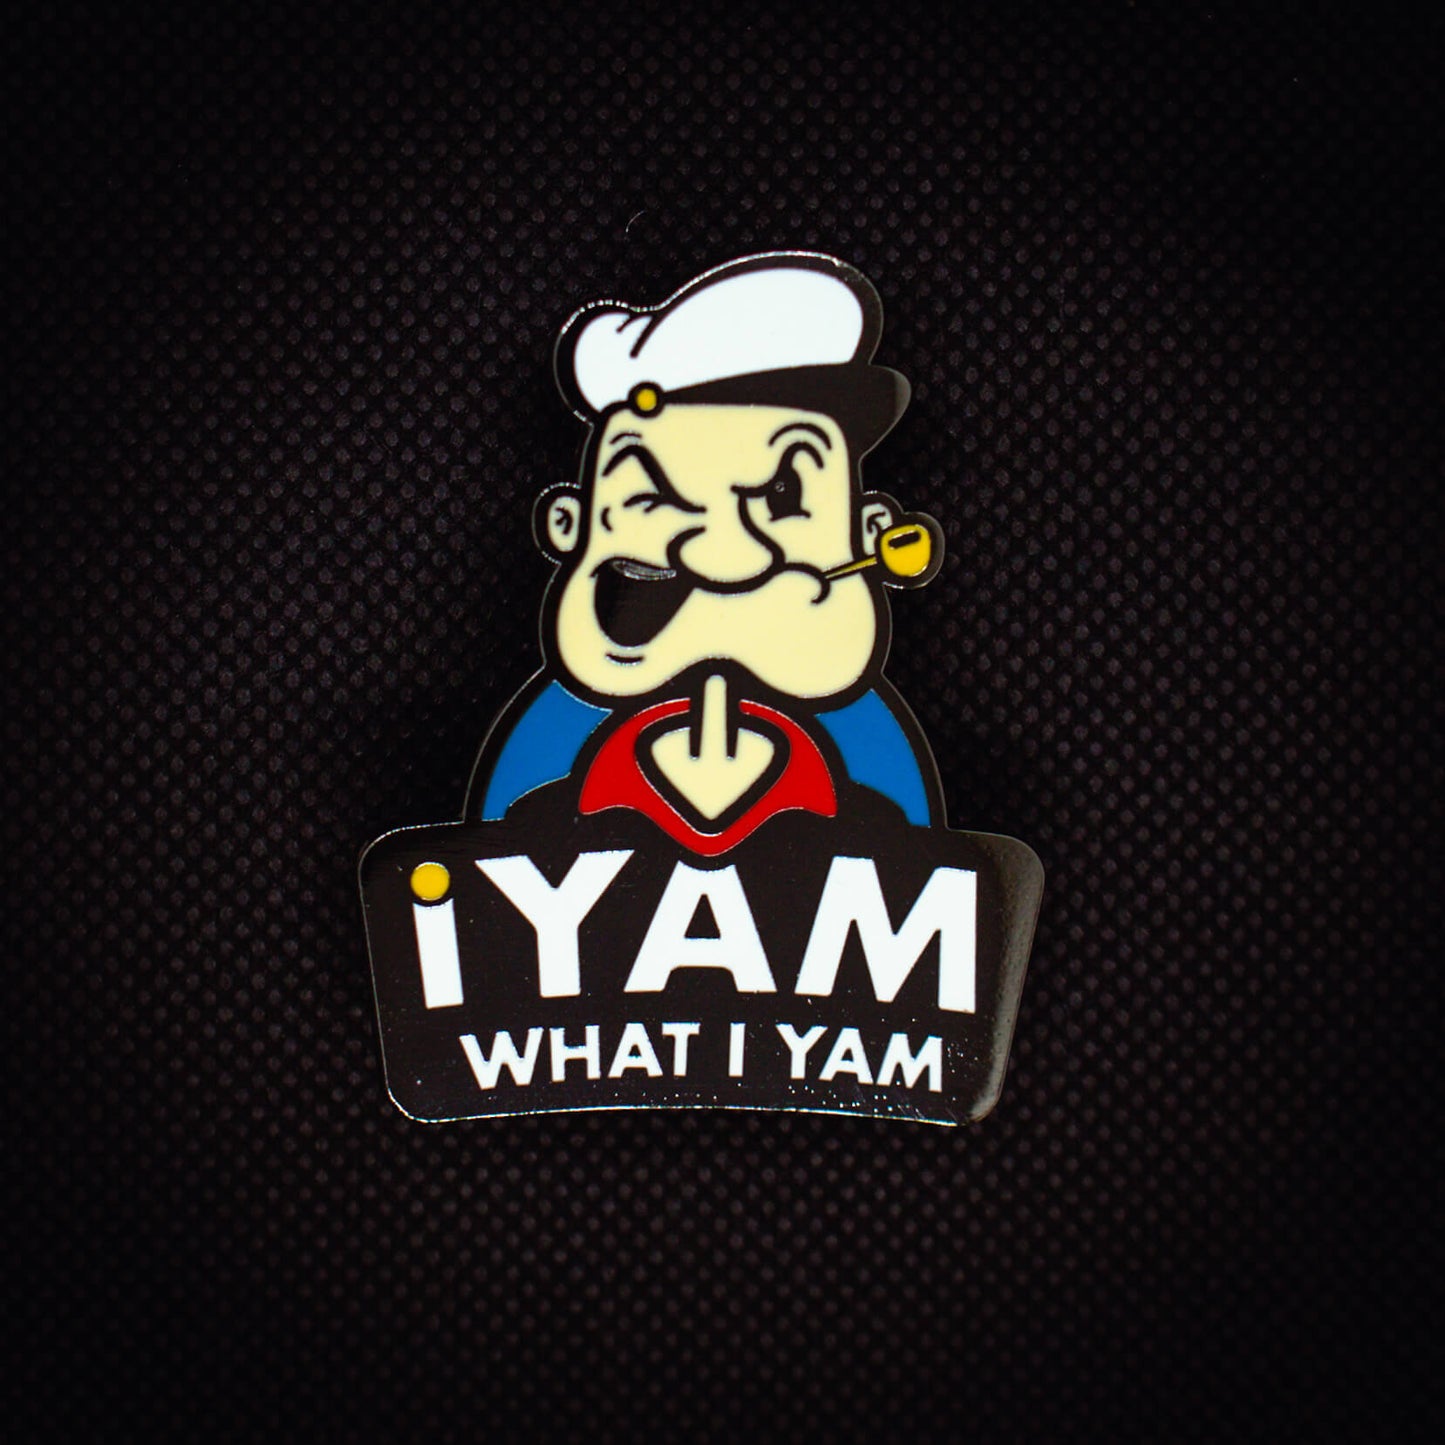 Popeye I Yam What I Yam